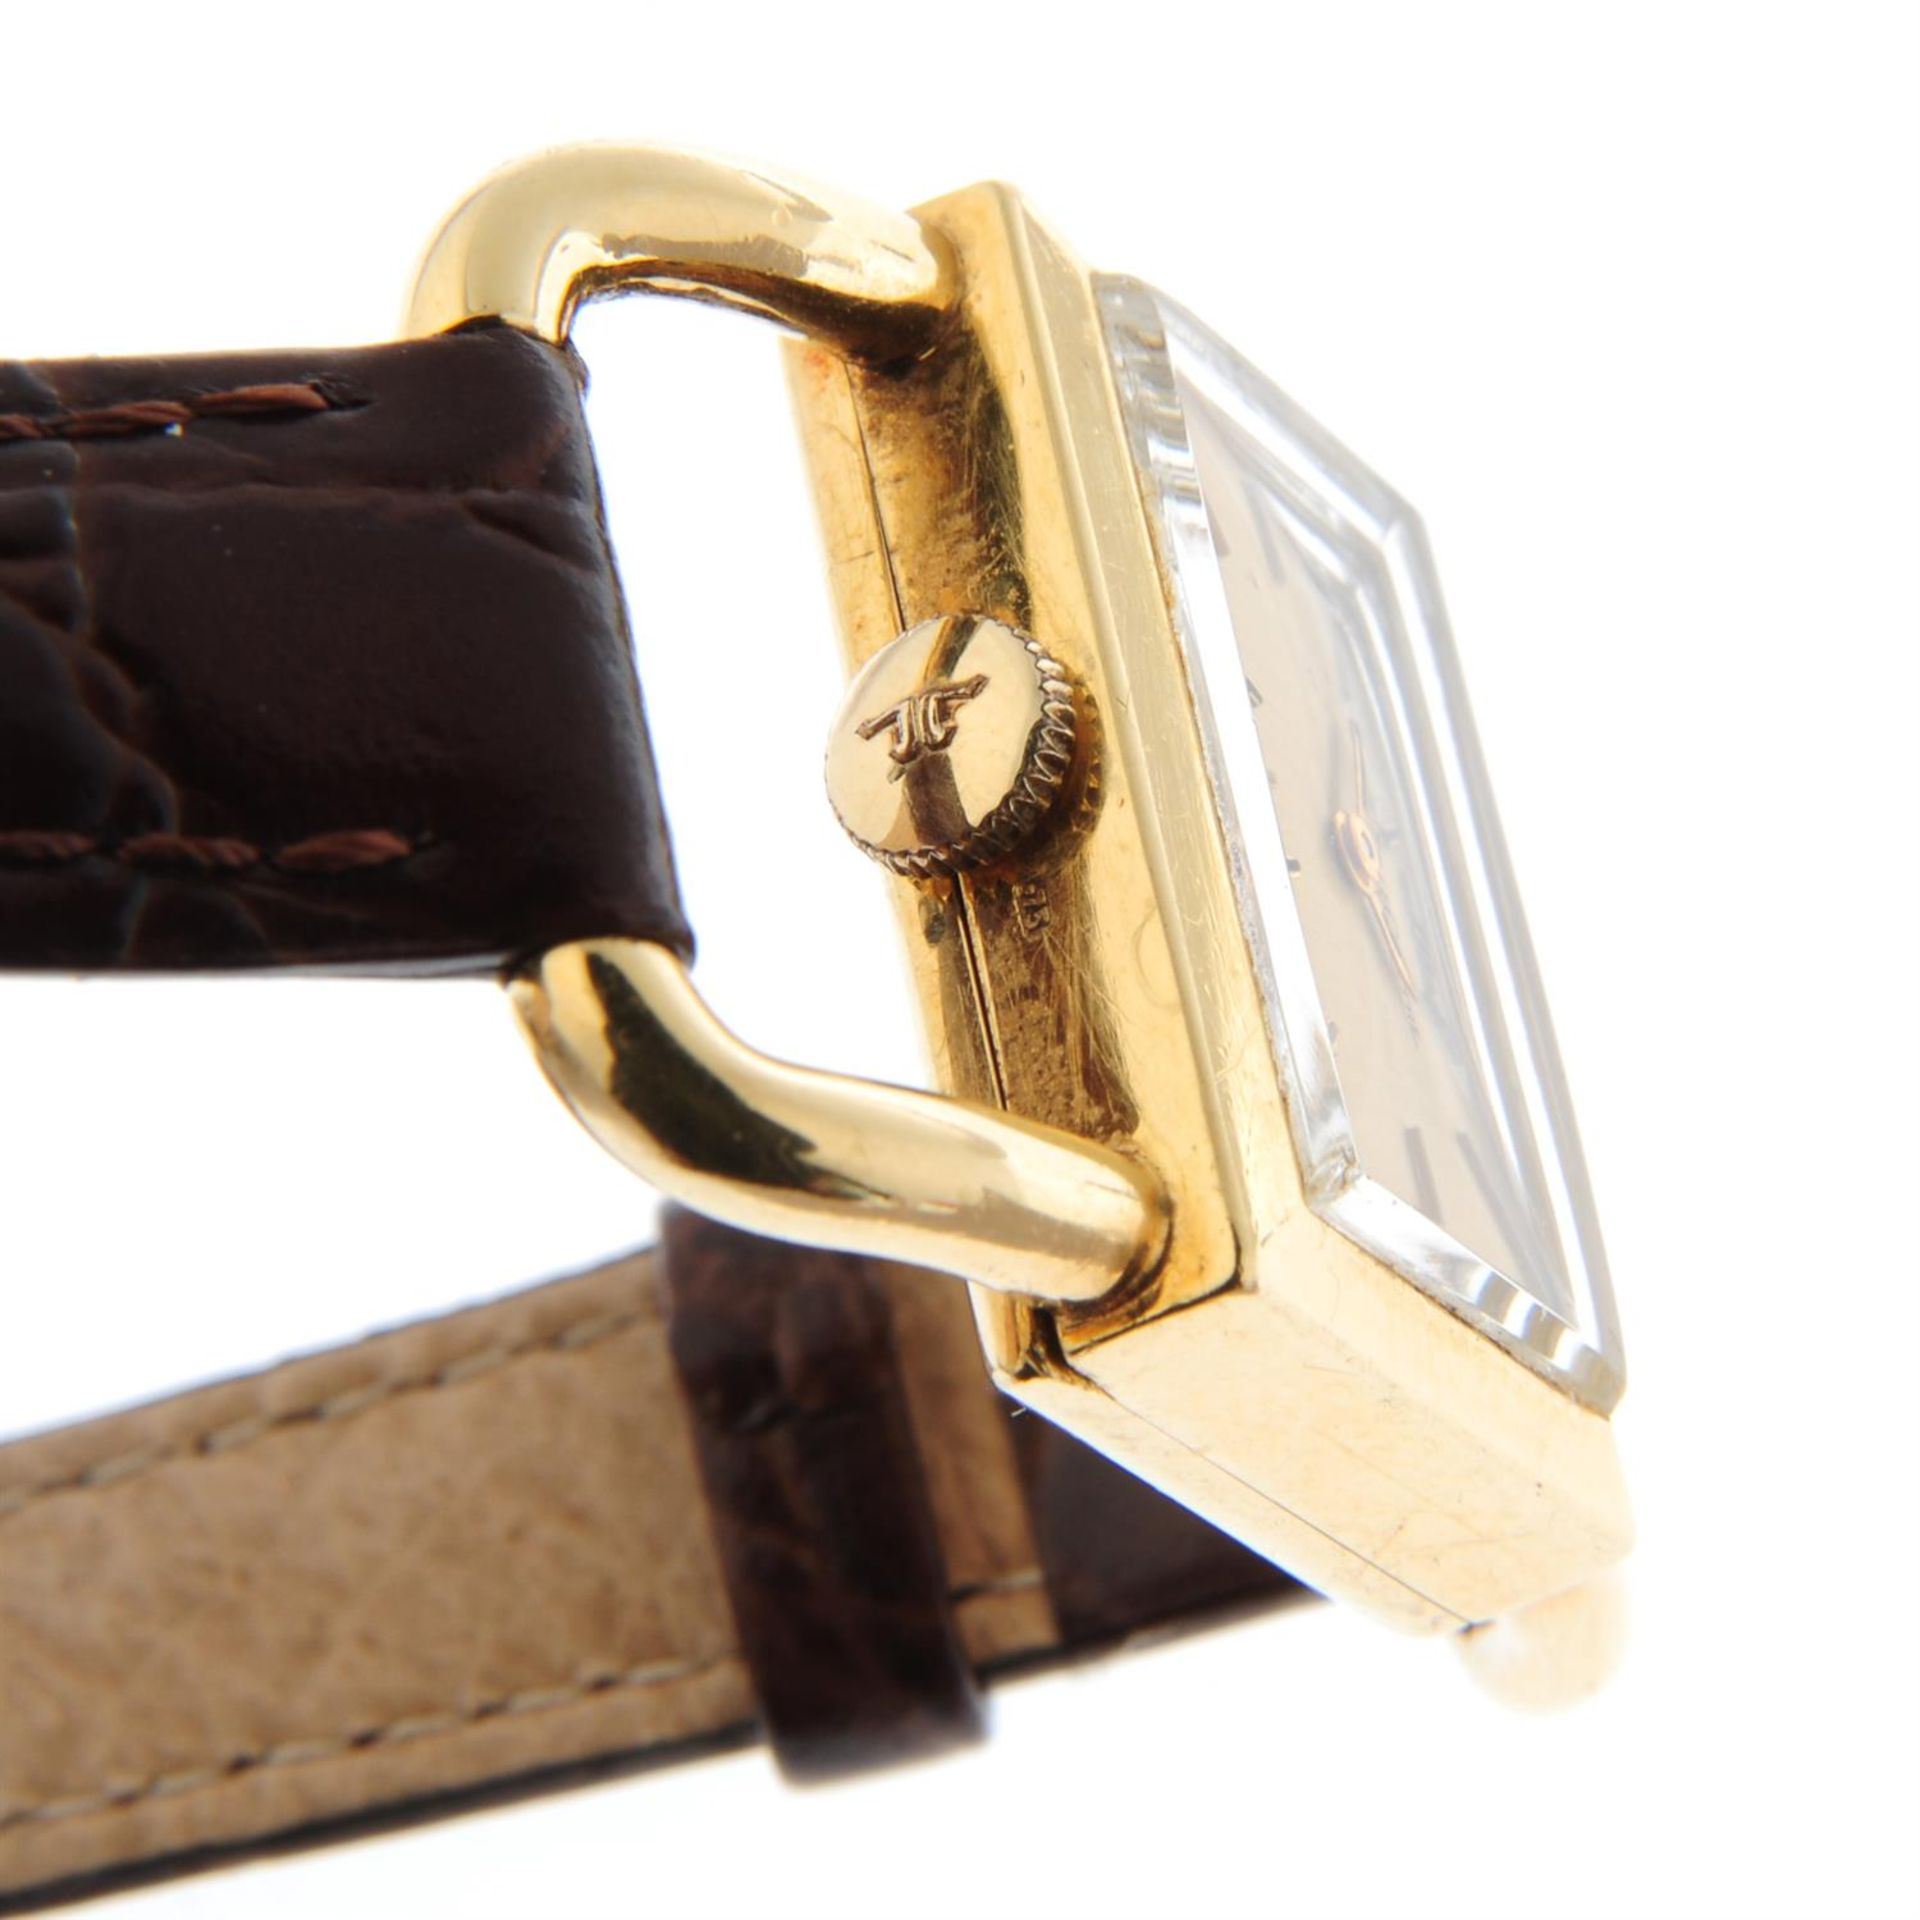 JAEGER-LECOULTRE - a 18ct yellow gold wrist watch, 23mm x 15mm. - Bild 3 aus 4